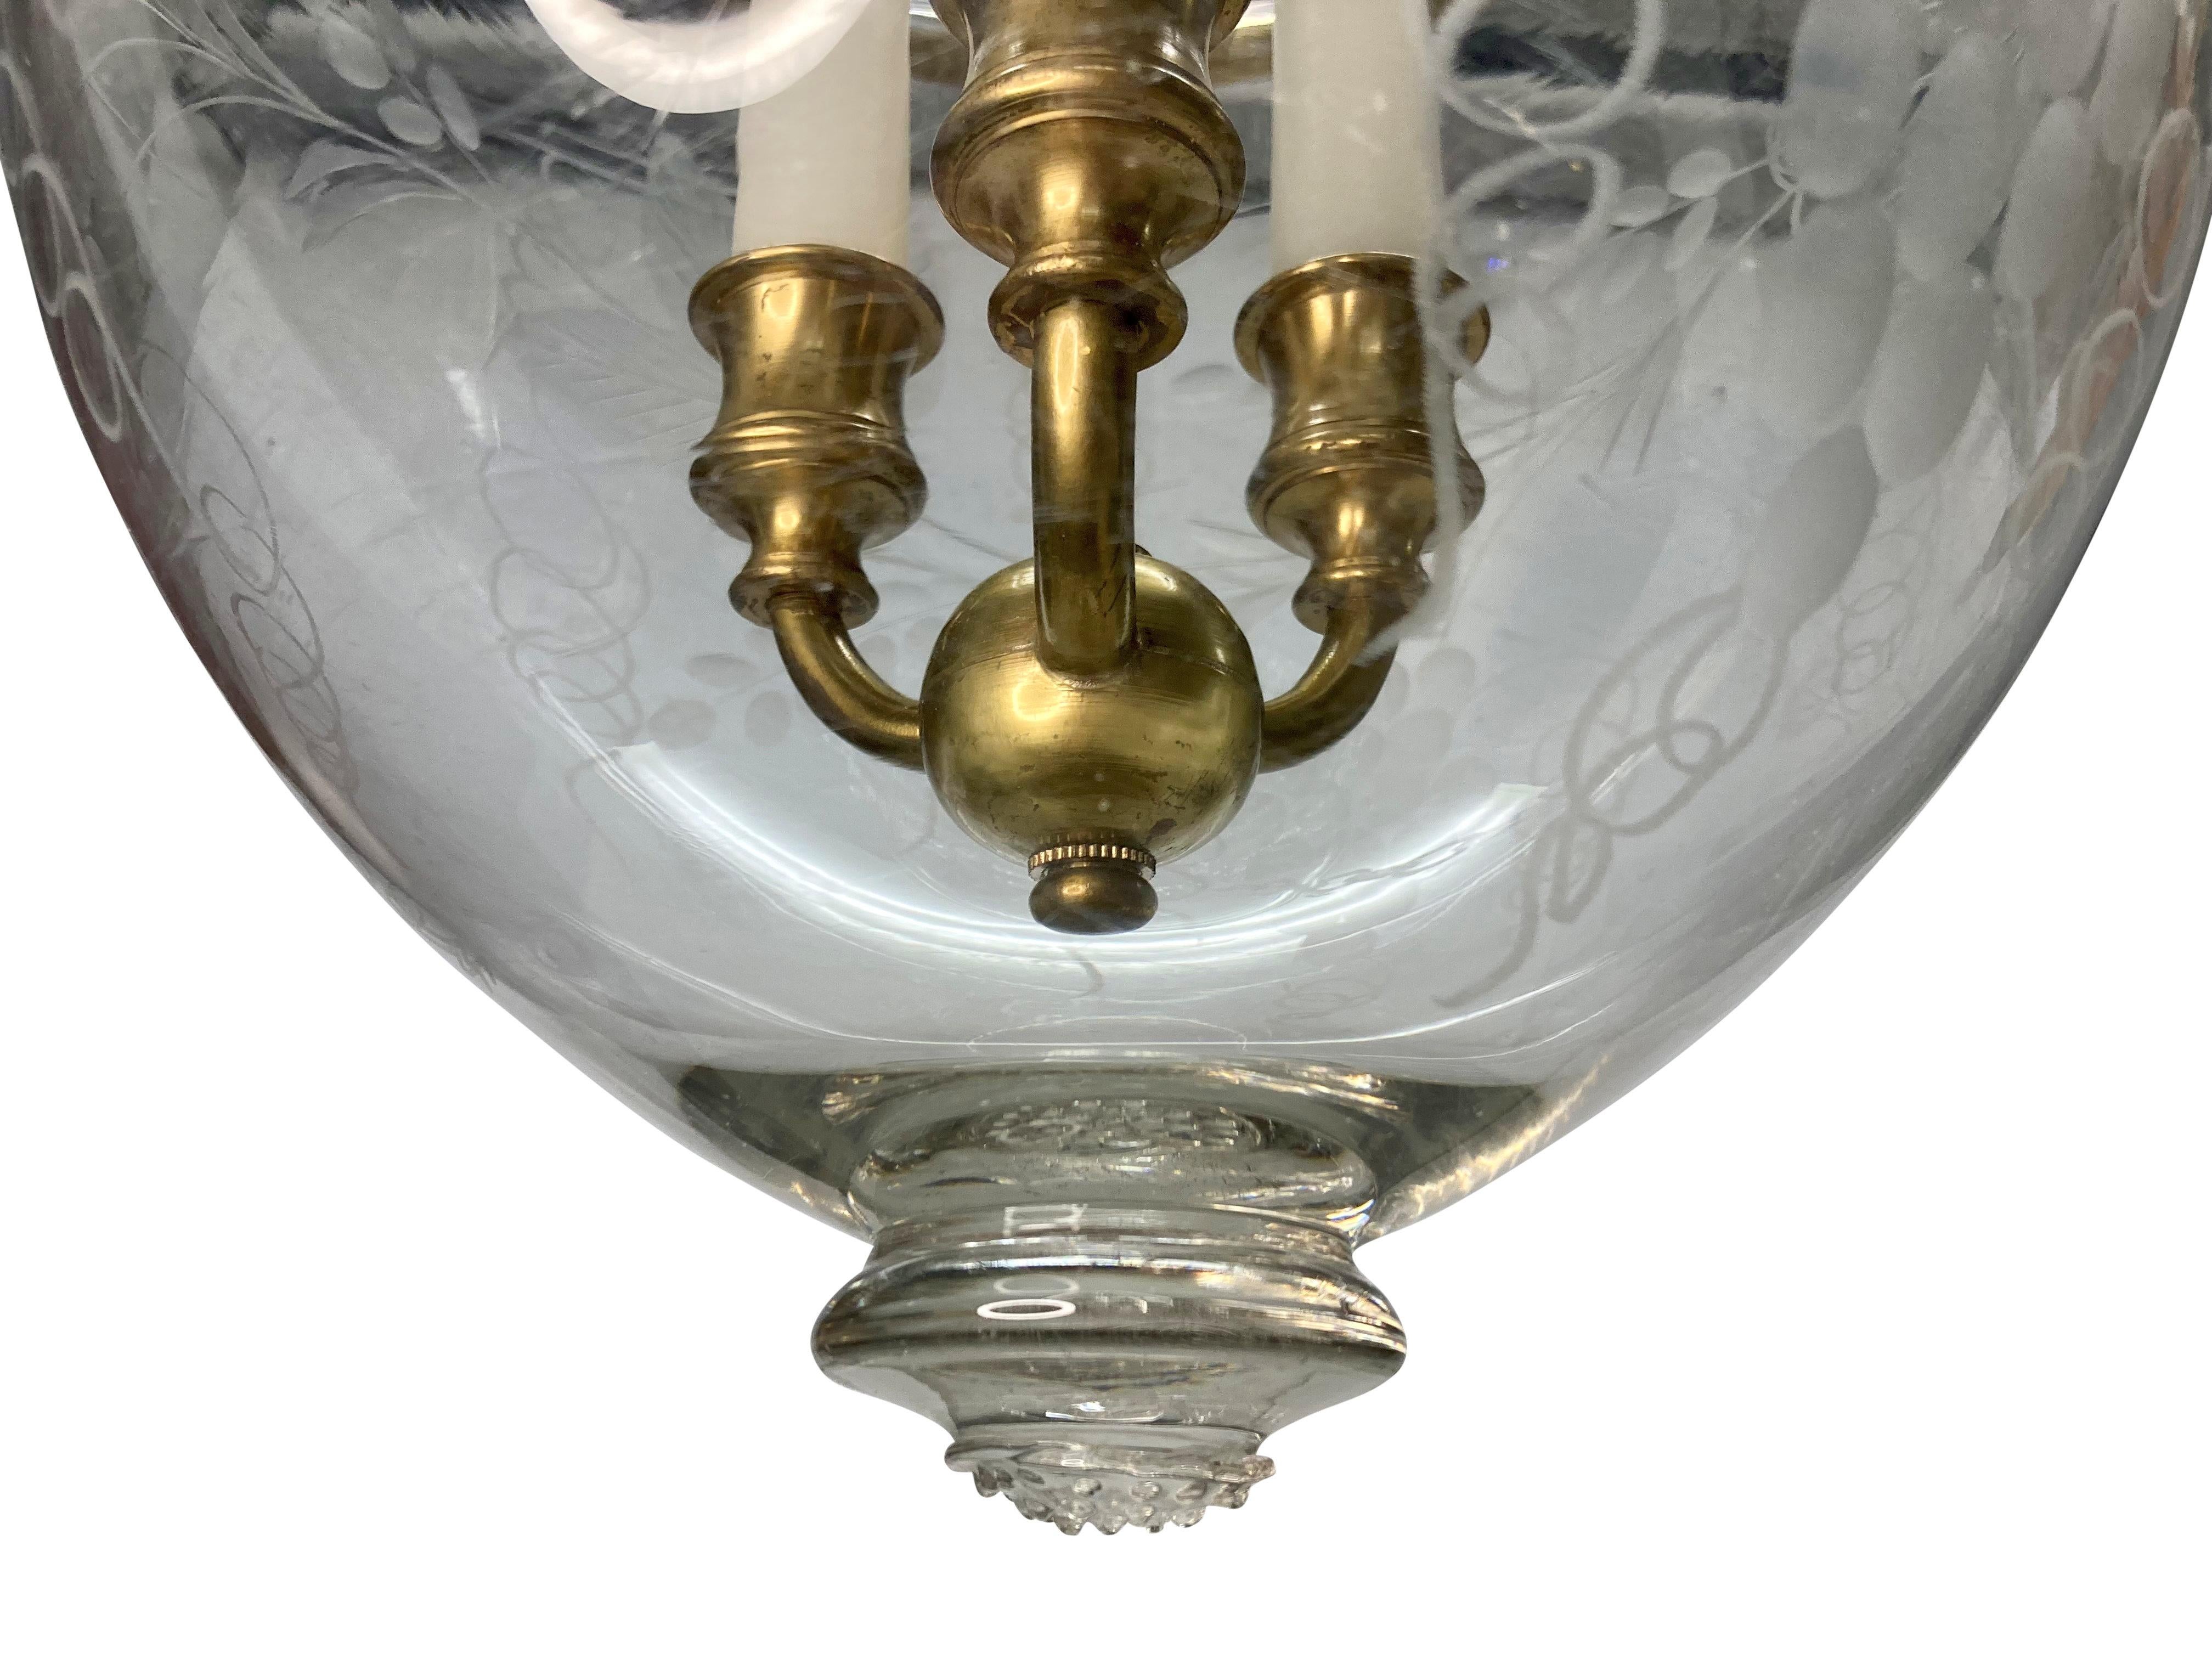 Eine englische mundgeblasene Glockenlaterne mit geätztem Weinrebenmuster und Messingbeschlägen. Das Glas hat aufgrund des Quecksilbers einen leichten Grauschleier.